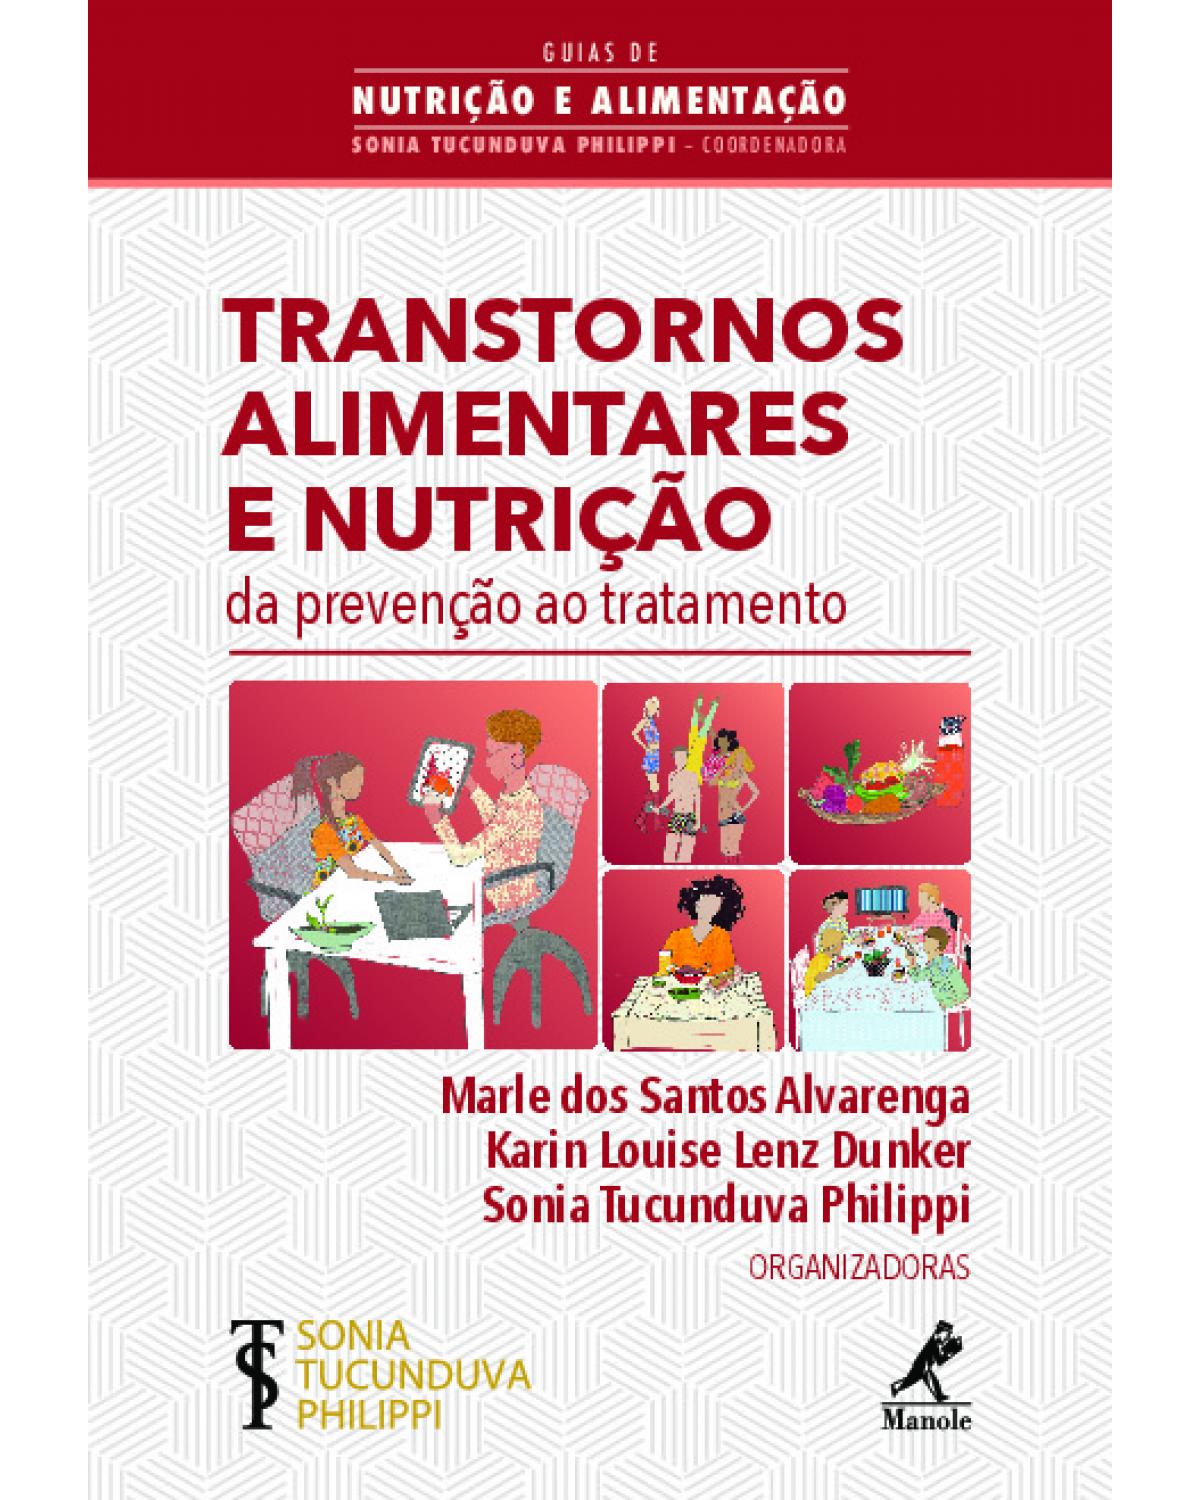 Transtornos alimentares e nutrição - da prevenção ao tratamento - 1ª Edição | 2019